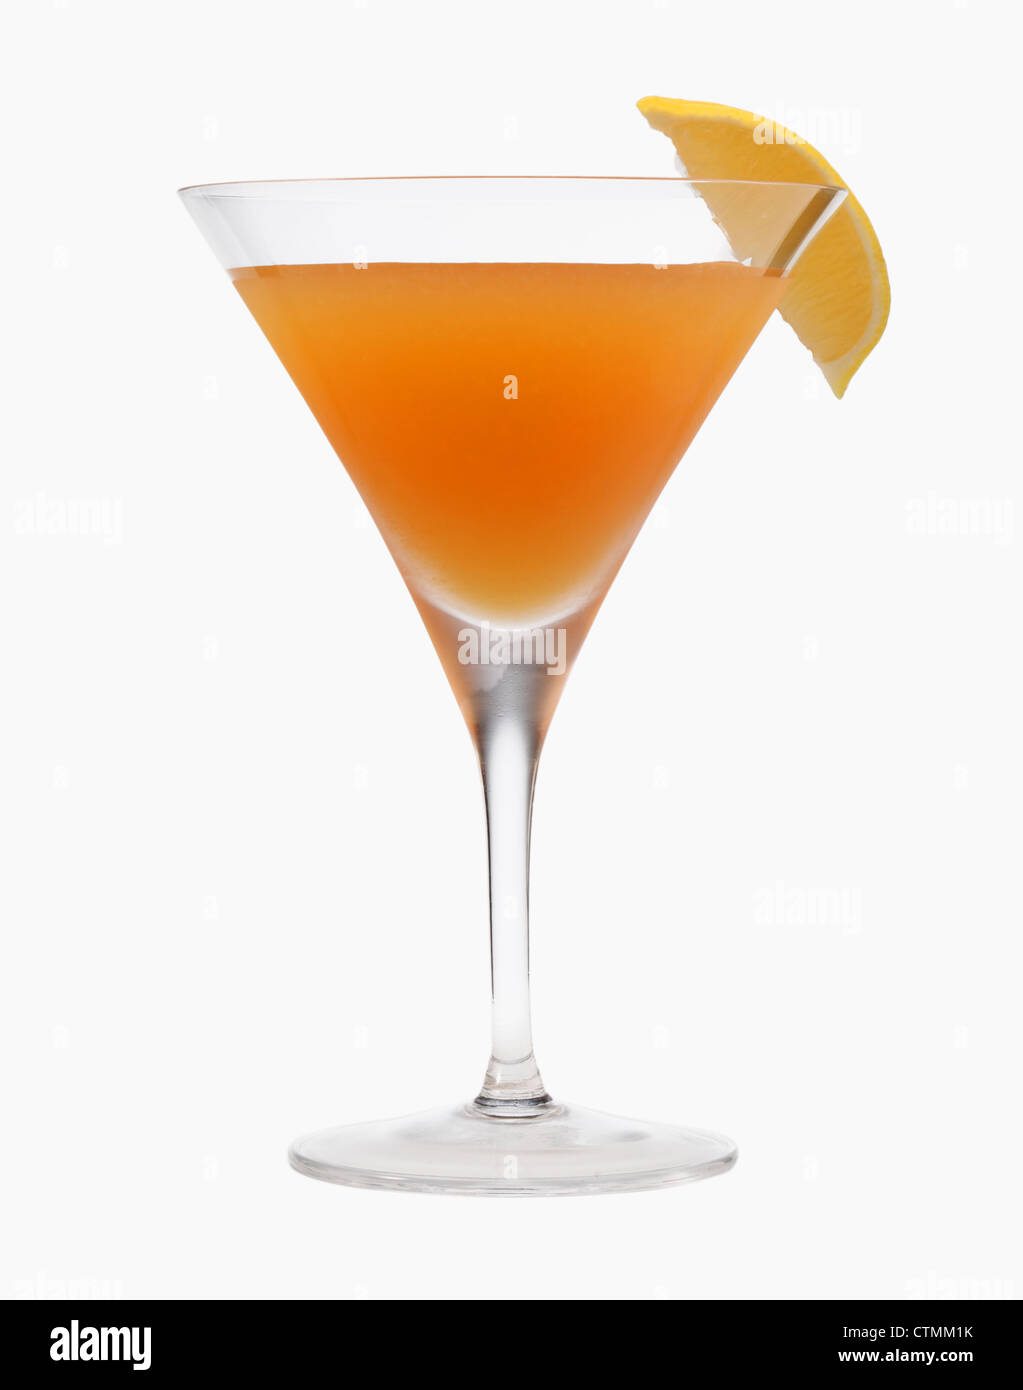 Ein stemmed Cocktailglas mit einer orange Flüssigkeit und Zitrone garniert auf einem weißen Hintergrund. Stockfoto